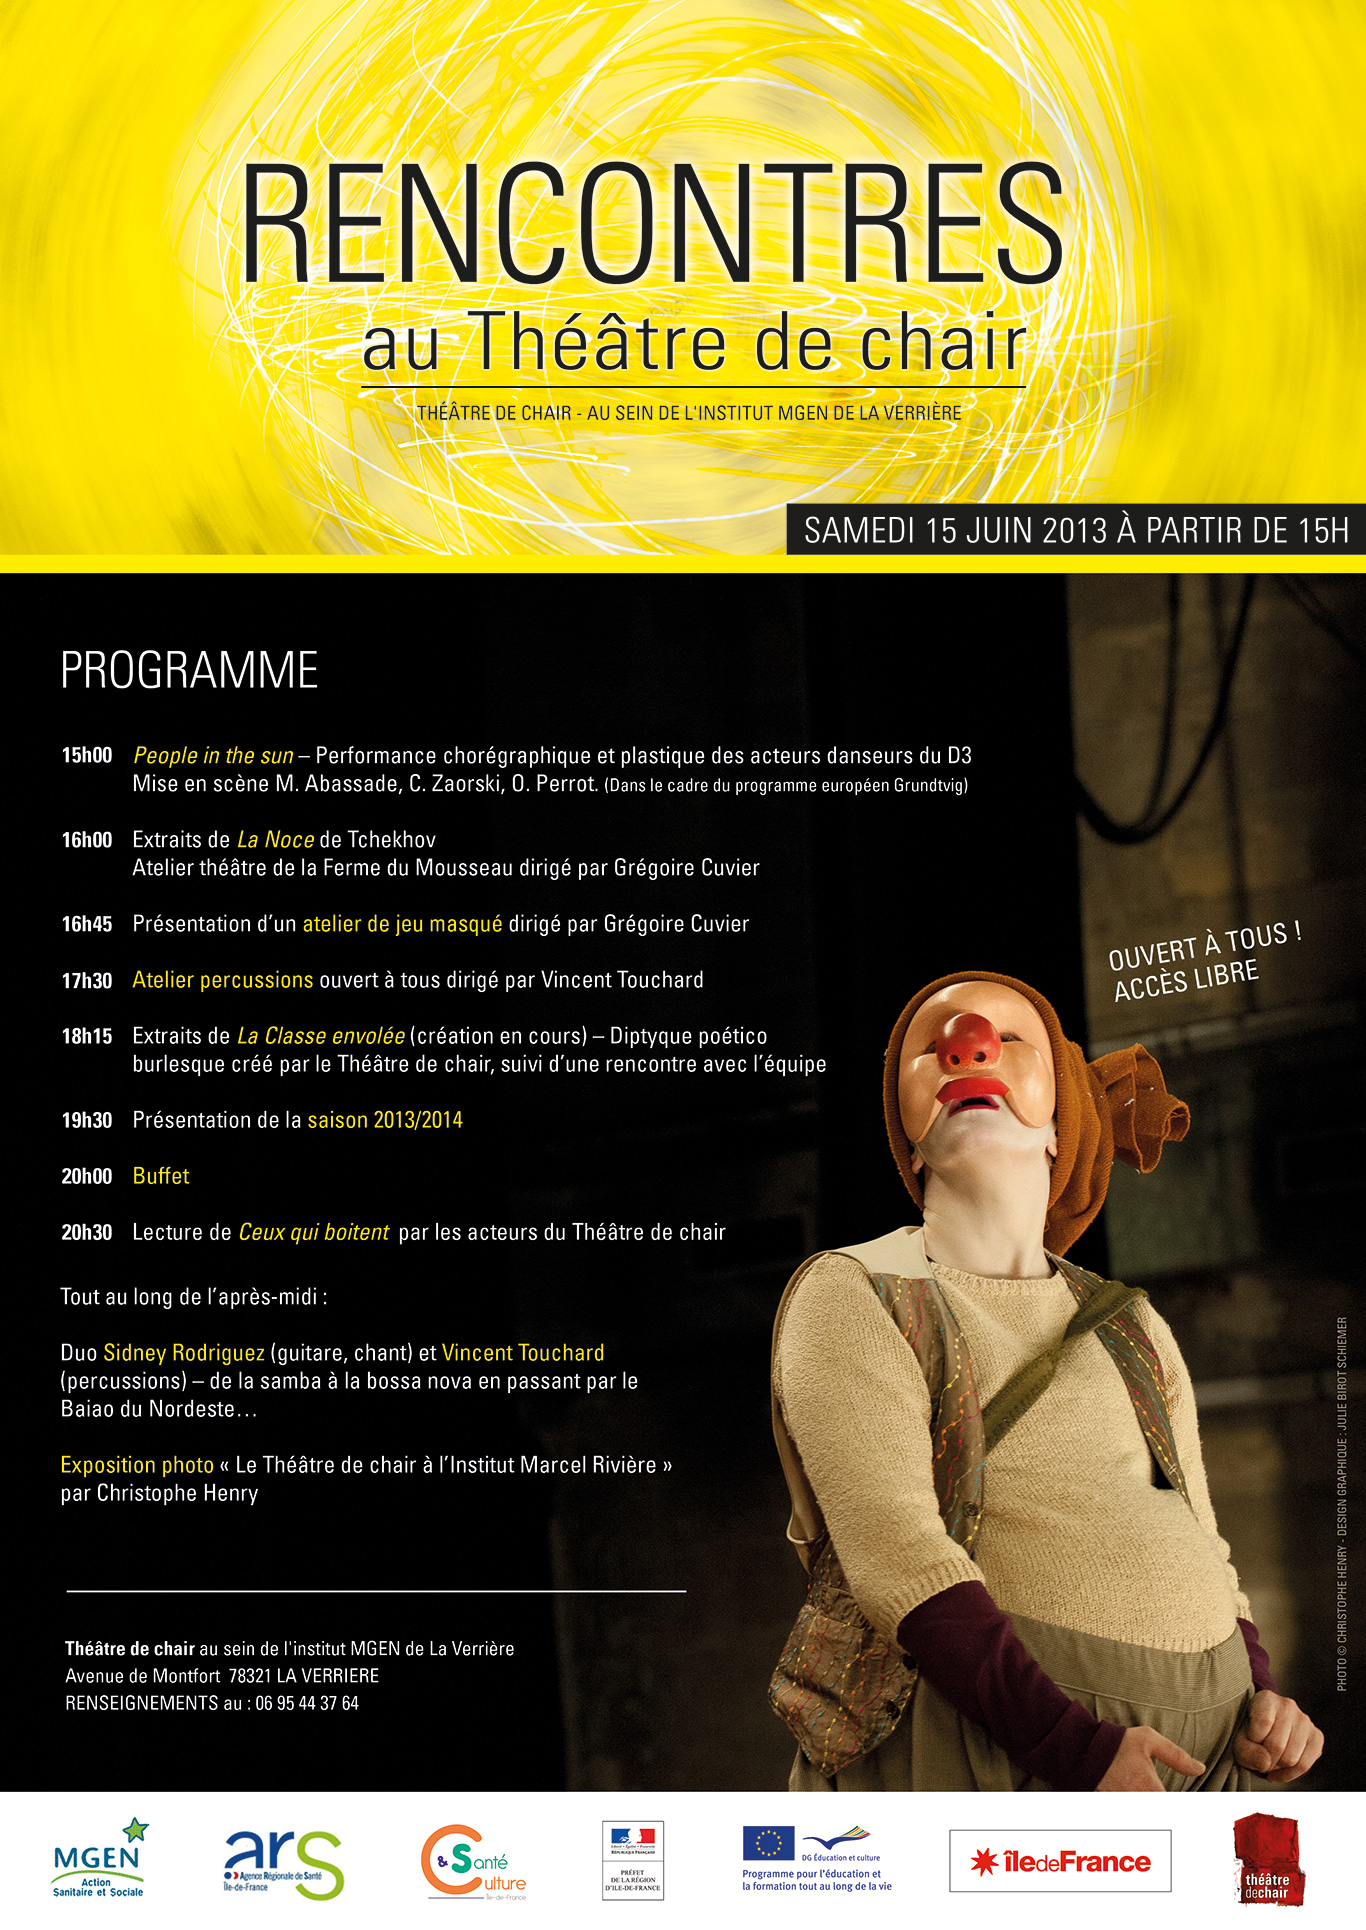 TheatreDeChair-Affiche-Rencontres